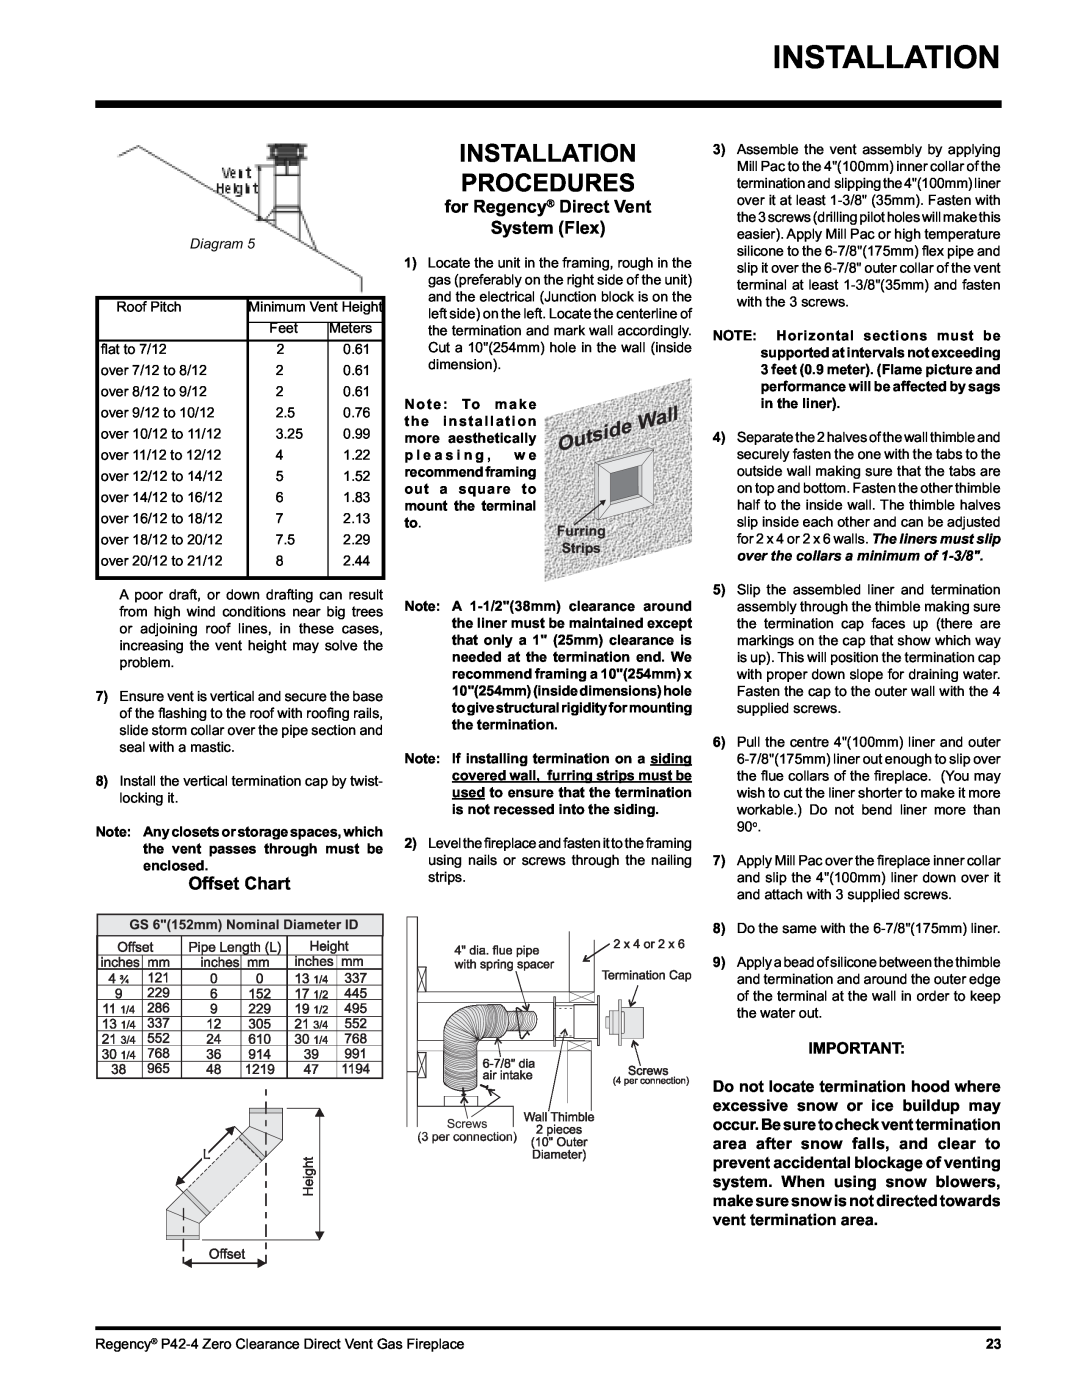 Regency P42-LP4, P42-NG4 Installation Procedures, Offset Chart, for Regency Direct Vent System Flex, Diagram 